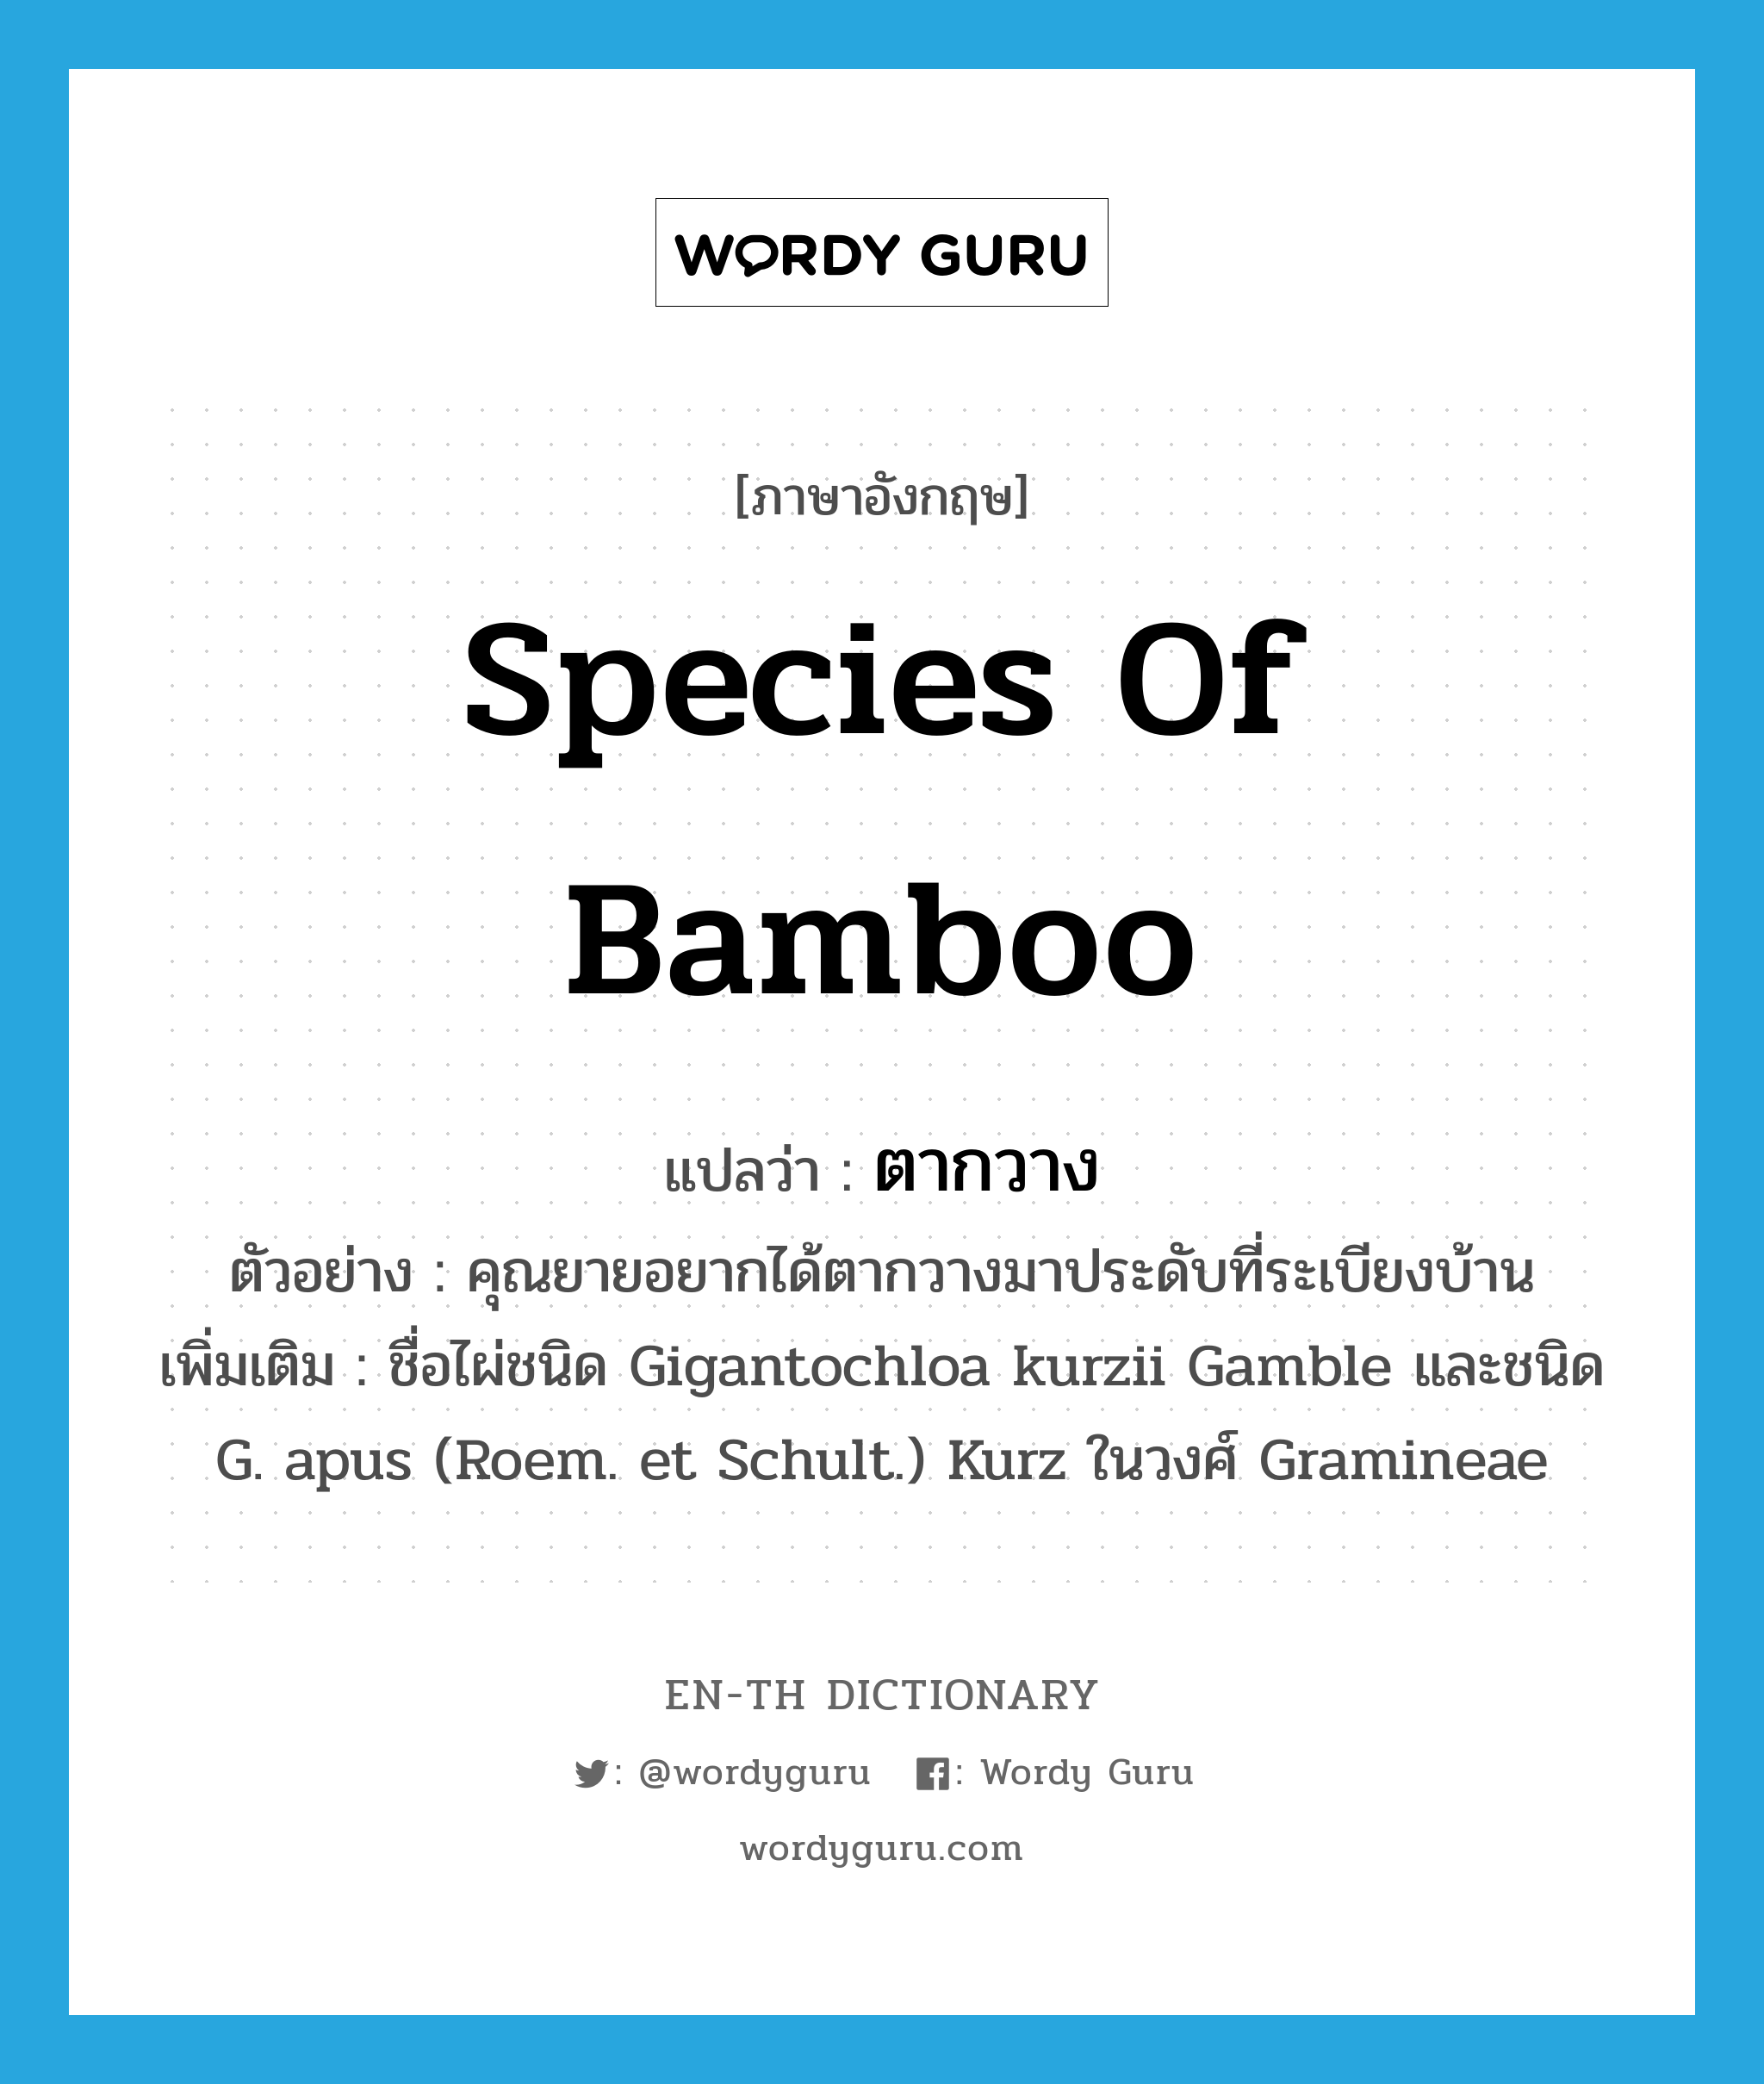 species of bamboo แปลว่า?, คำศัพท์ภาษาอังกฤษ species of bamboo แปลว่า ตากวาง ประเภท N ตัวอย่าง คุณยายอยากได้ตากวางมาประดับที่ระเบียงบ้าน เพิ่มเติม ชื่อไผ่ชนิด Gigantochloa kurzii Gamble และชนิด G. apus (Roem. et Schult.) Kurz ในวงศ์ Gramineae หมวด N